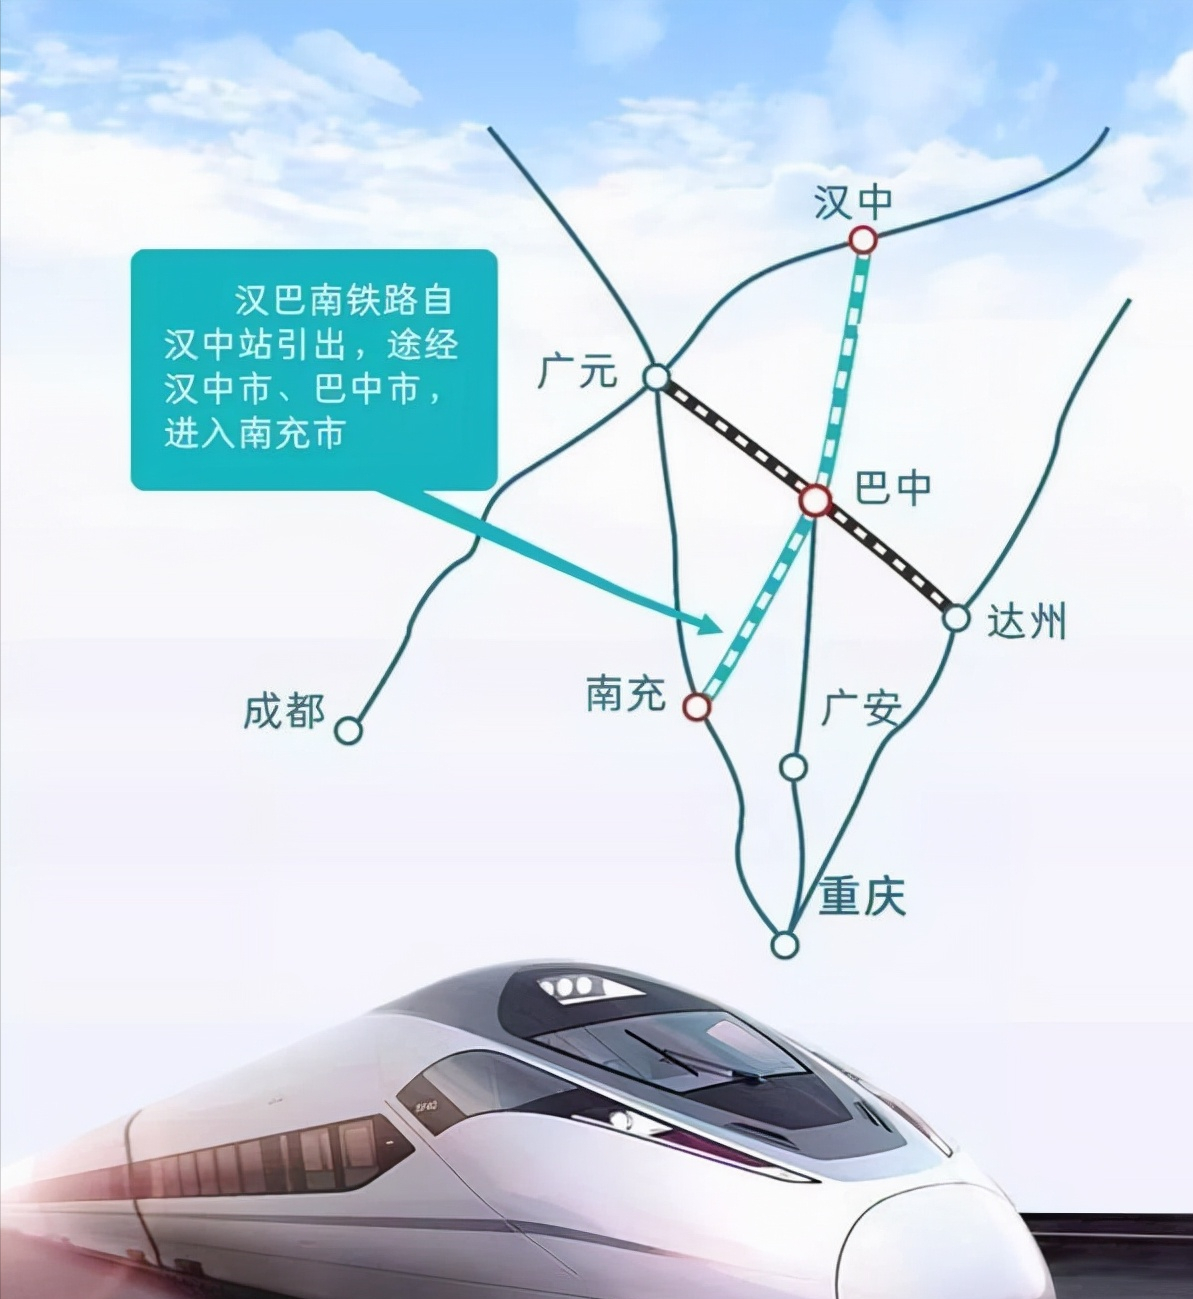 汉巴南快速铁路建成后将成为革命老区经济发展的重要交通基础设施